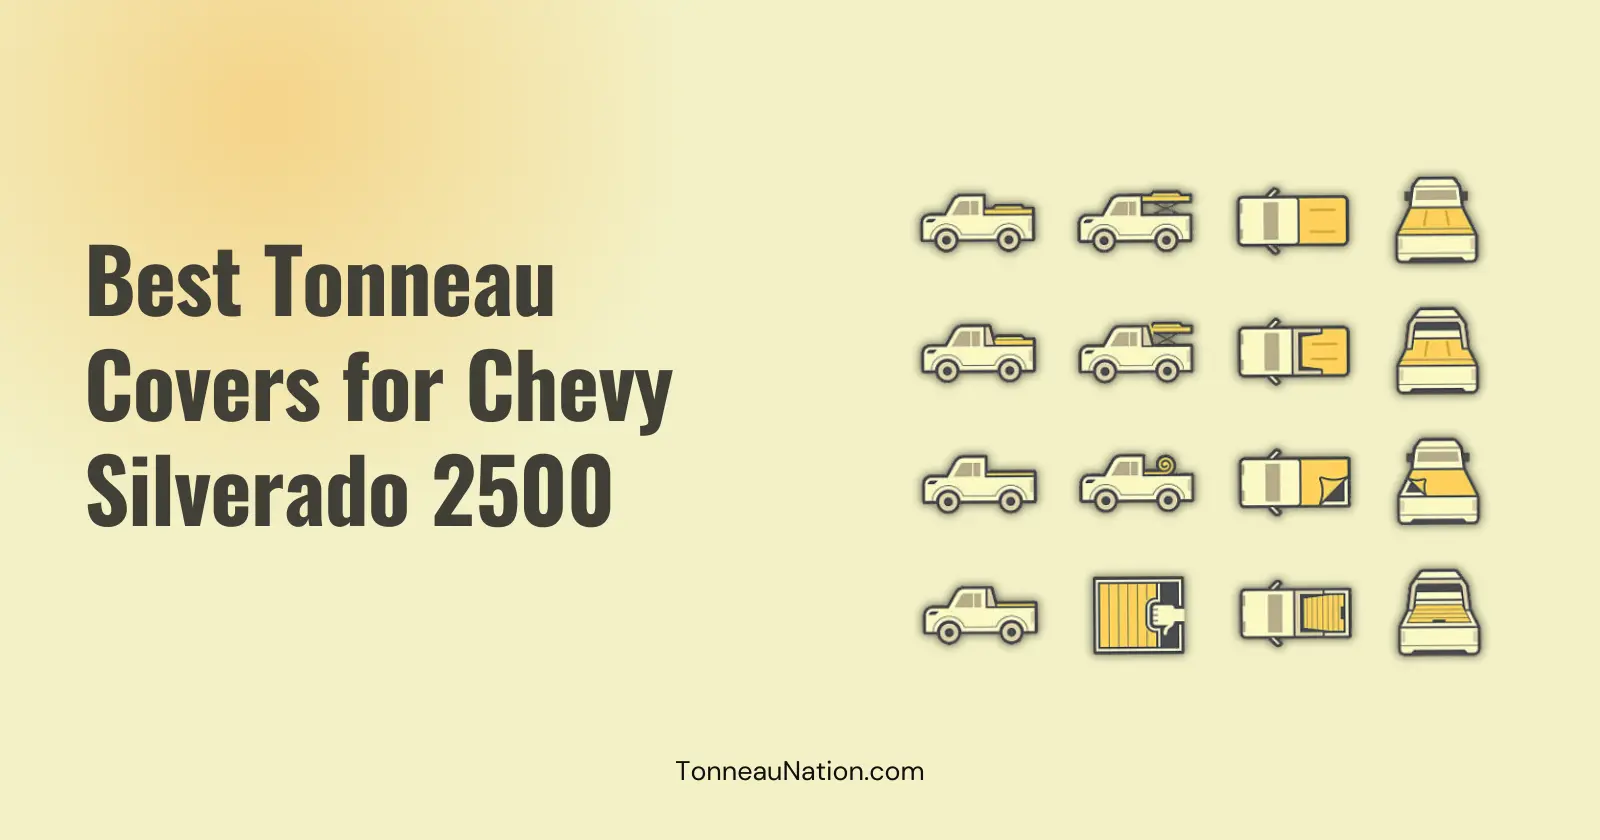 Tonneau cover for Chevy Silverado 2500